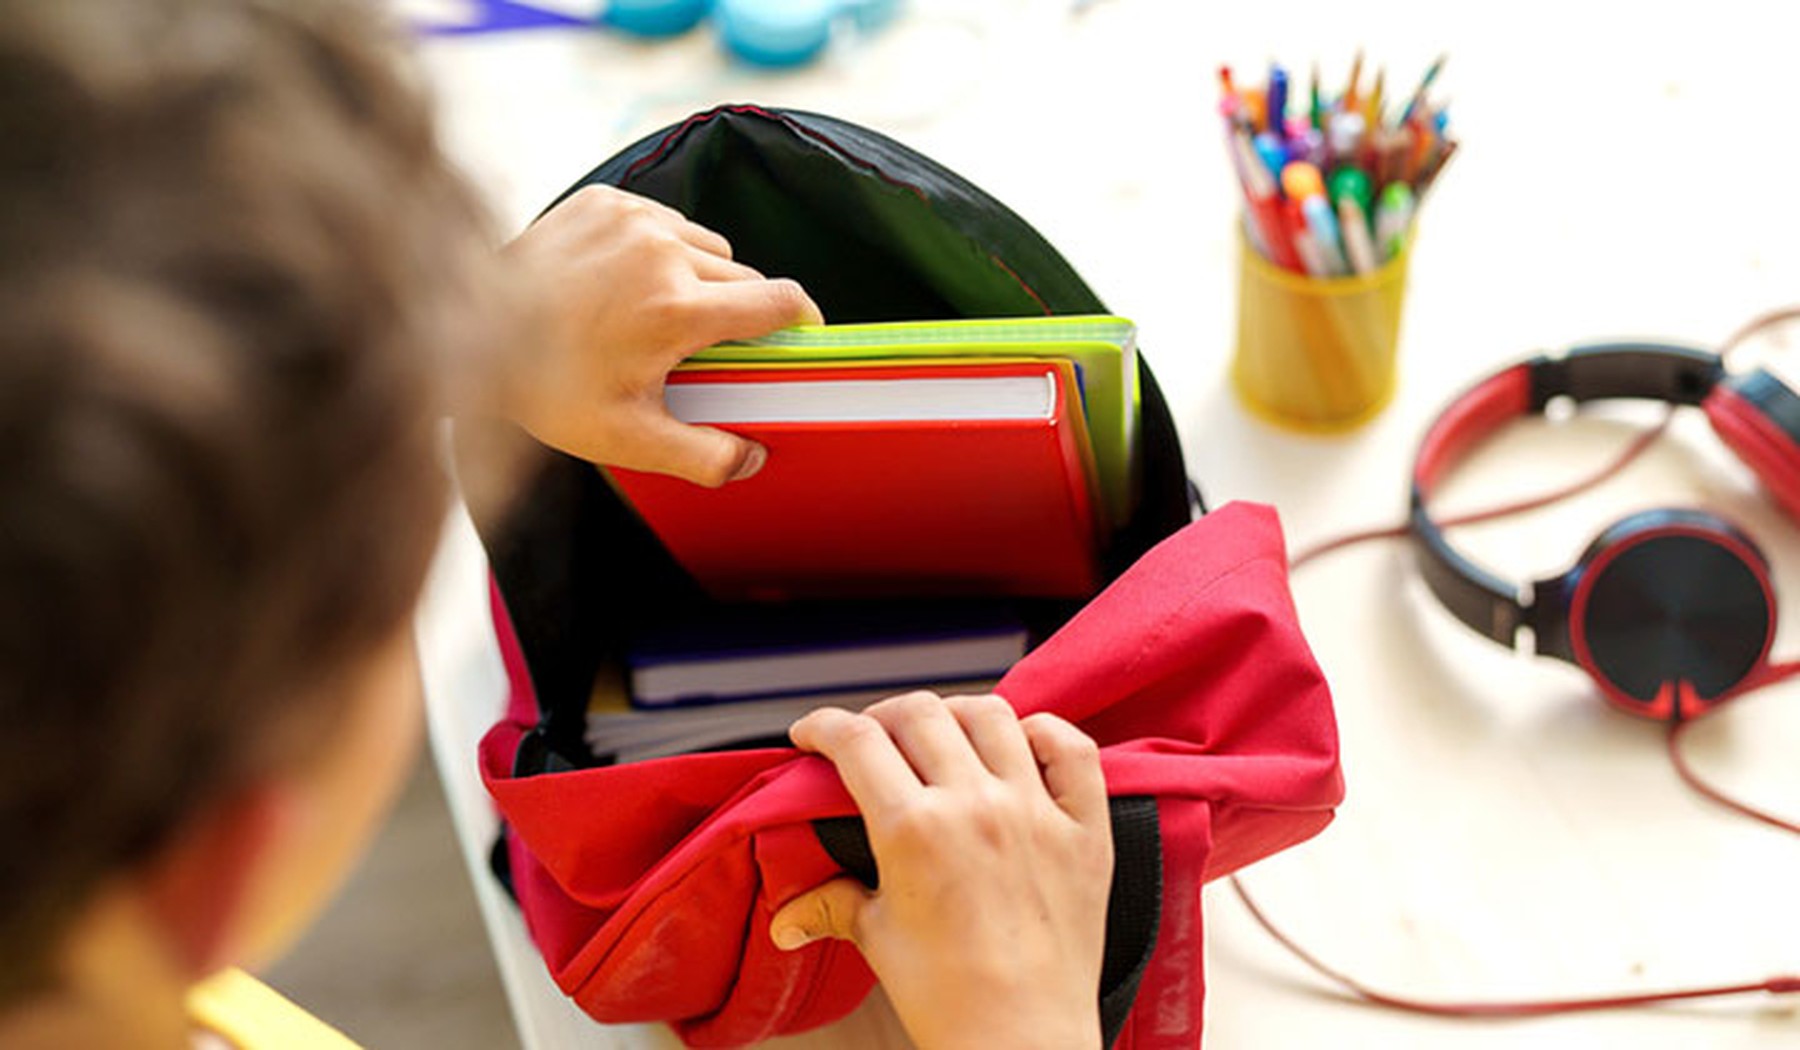 Niño metiendo unos libros rojos y verdes en su mochila escolar roja